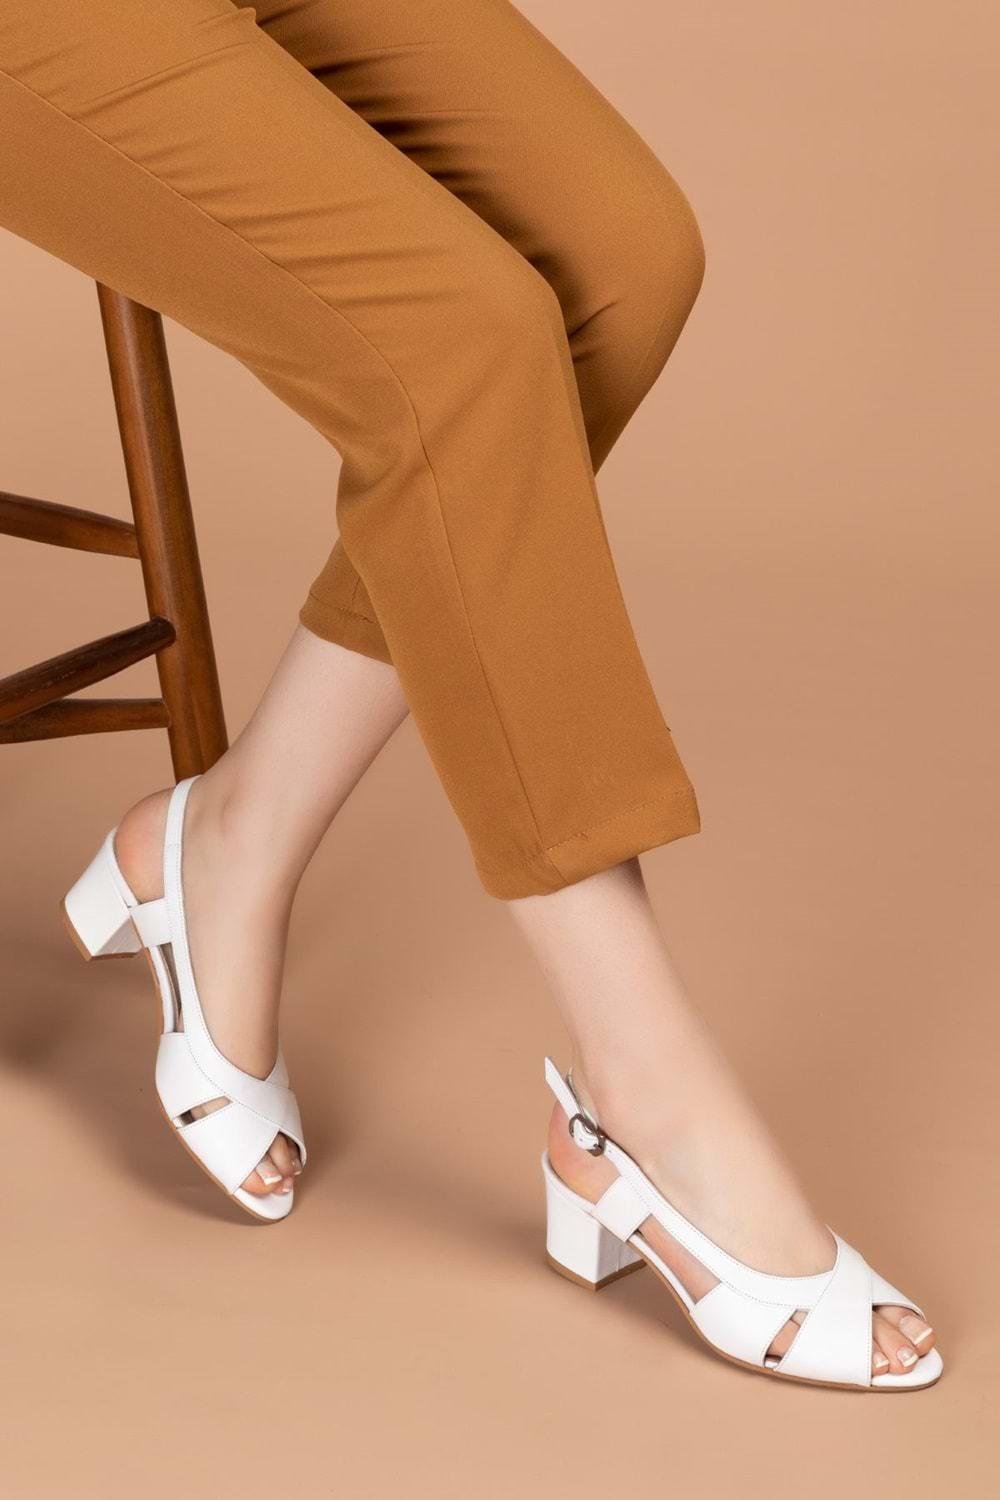 Gondol Kadın Hakiki Deri Klasik Topuklu Ayakkabı şhn.729 - Beyaz - 34